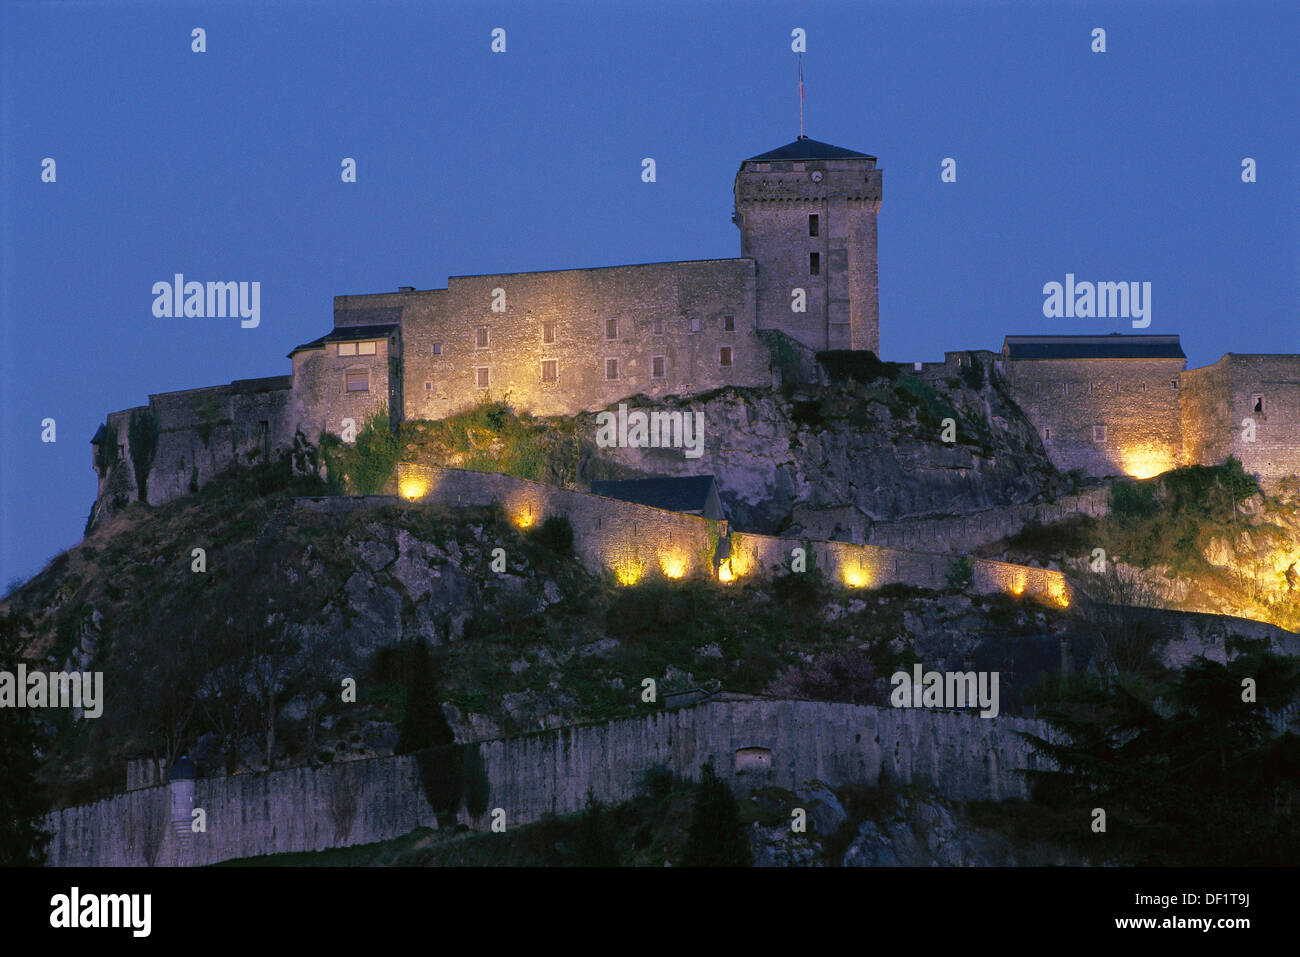 Castle. Lourdes. France Stock Photo - Alamy